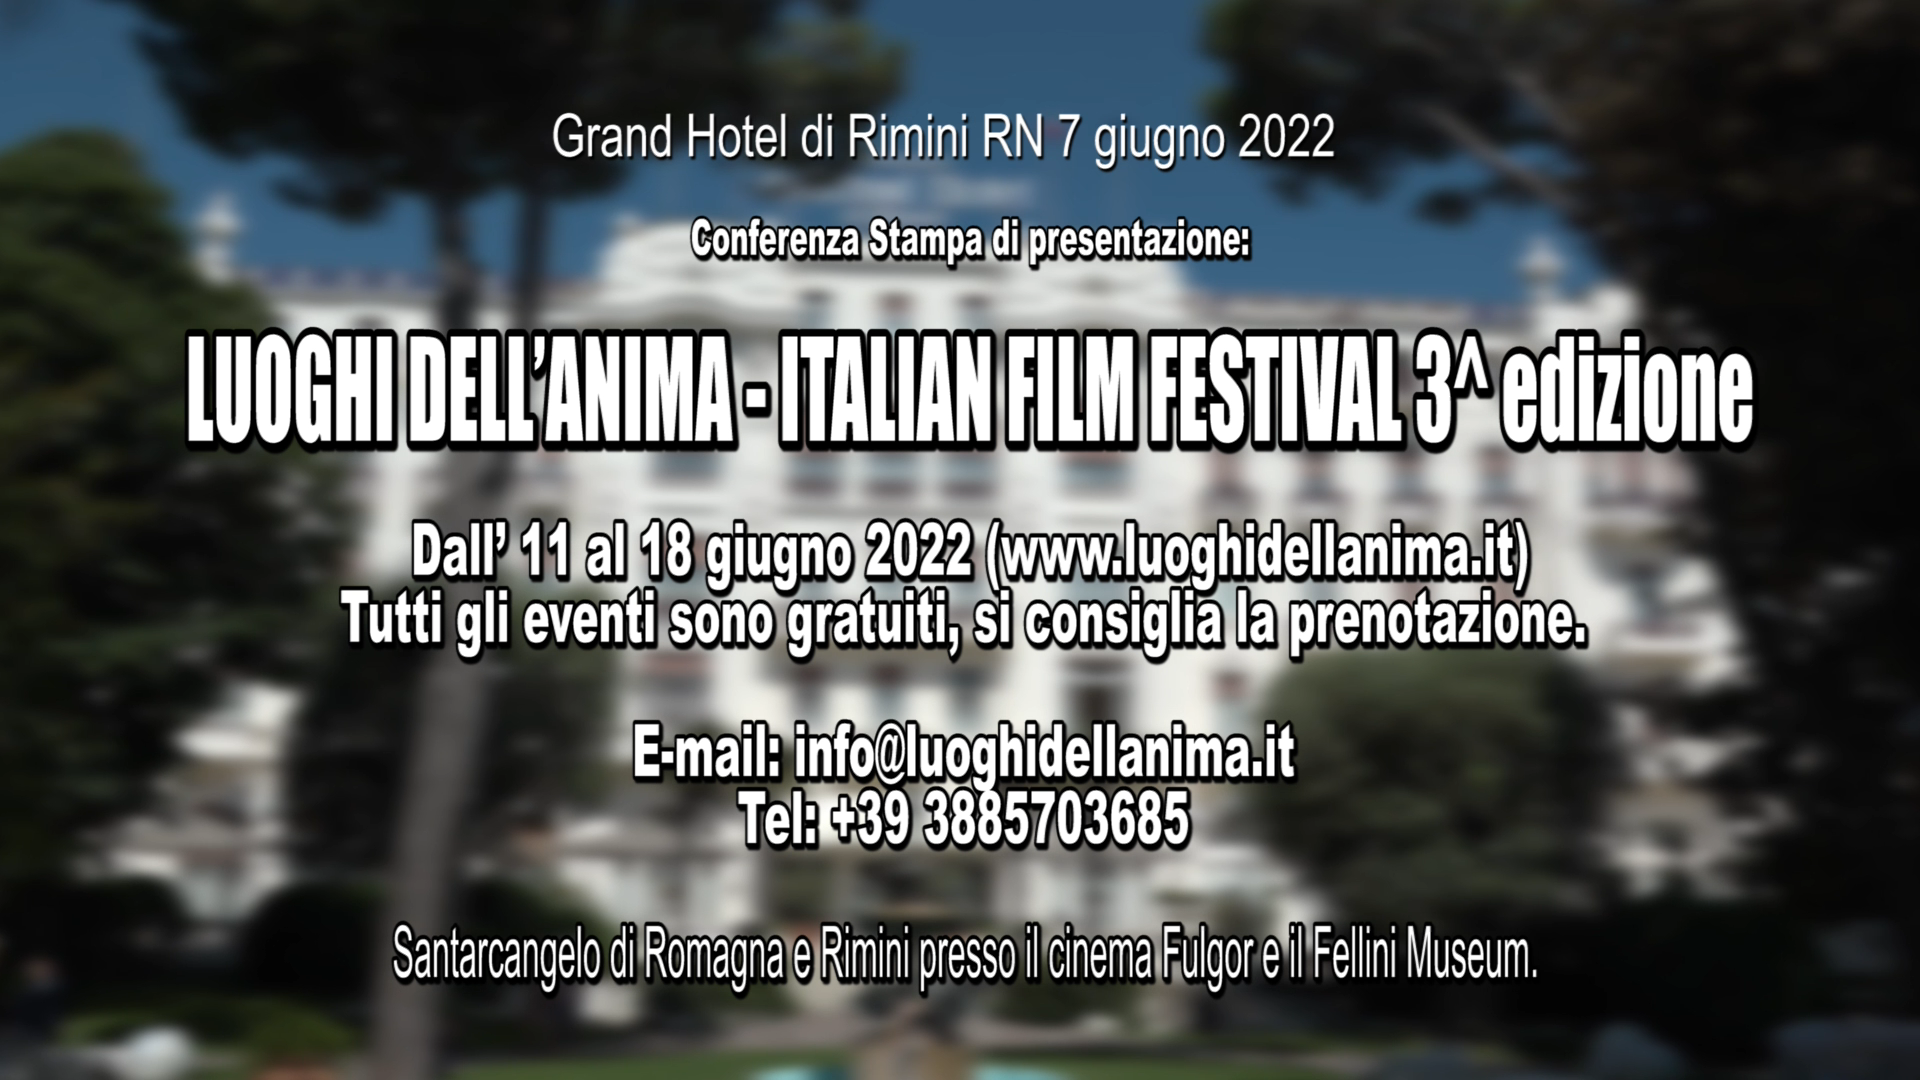 Luoghi dell’Anima – Italian Film Festival – 3a Edizione